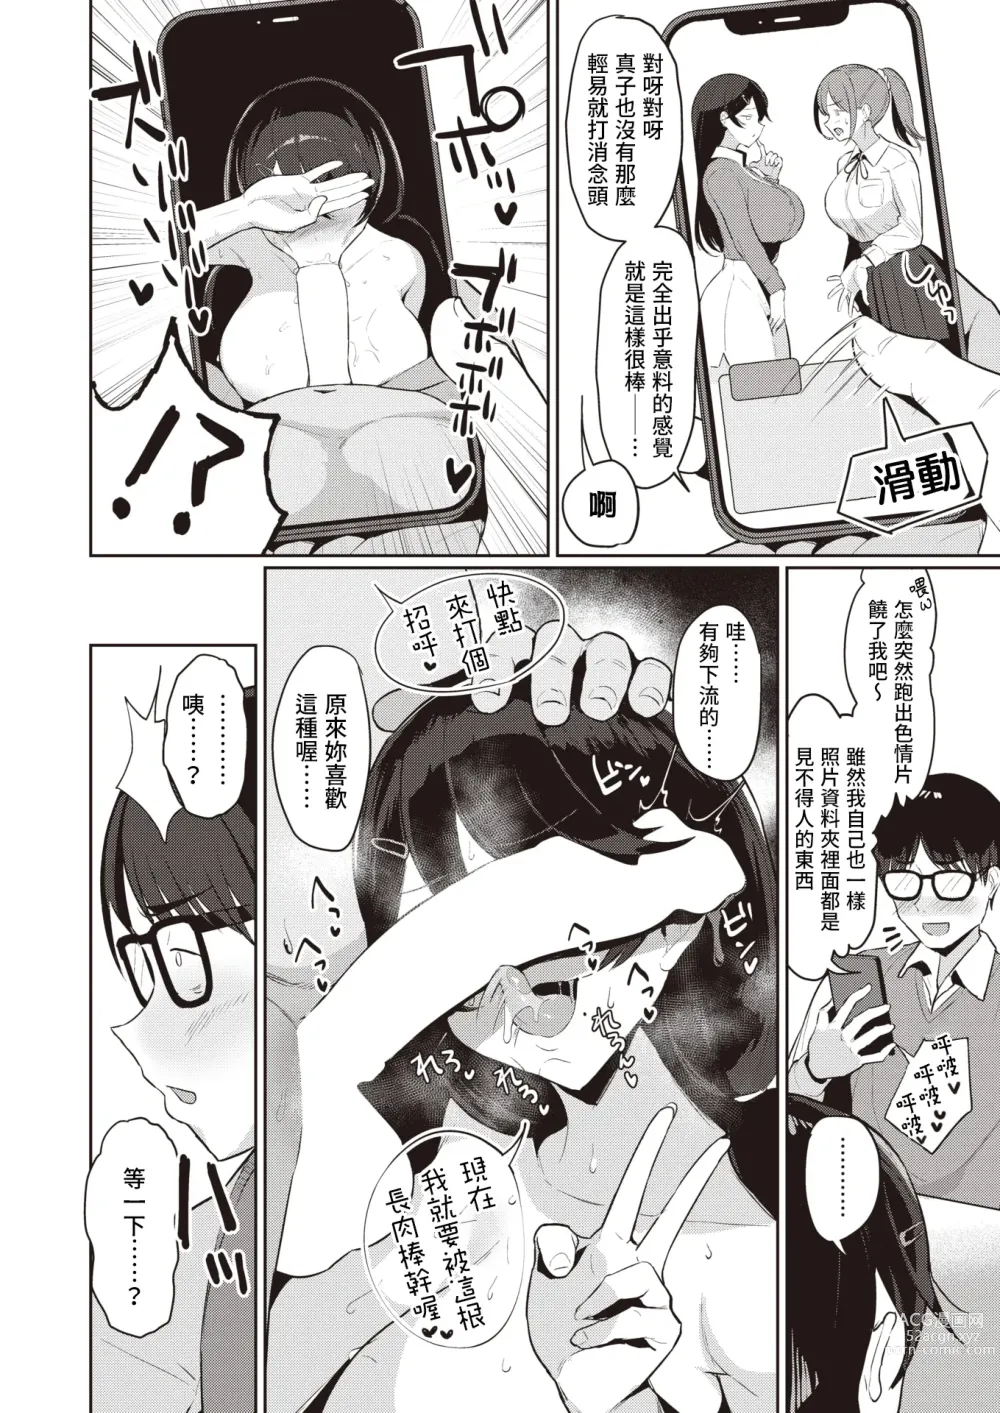 Page 6 of manga 宅女的秘密